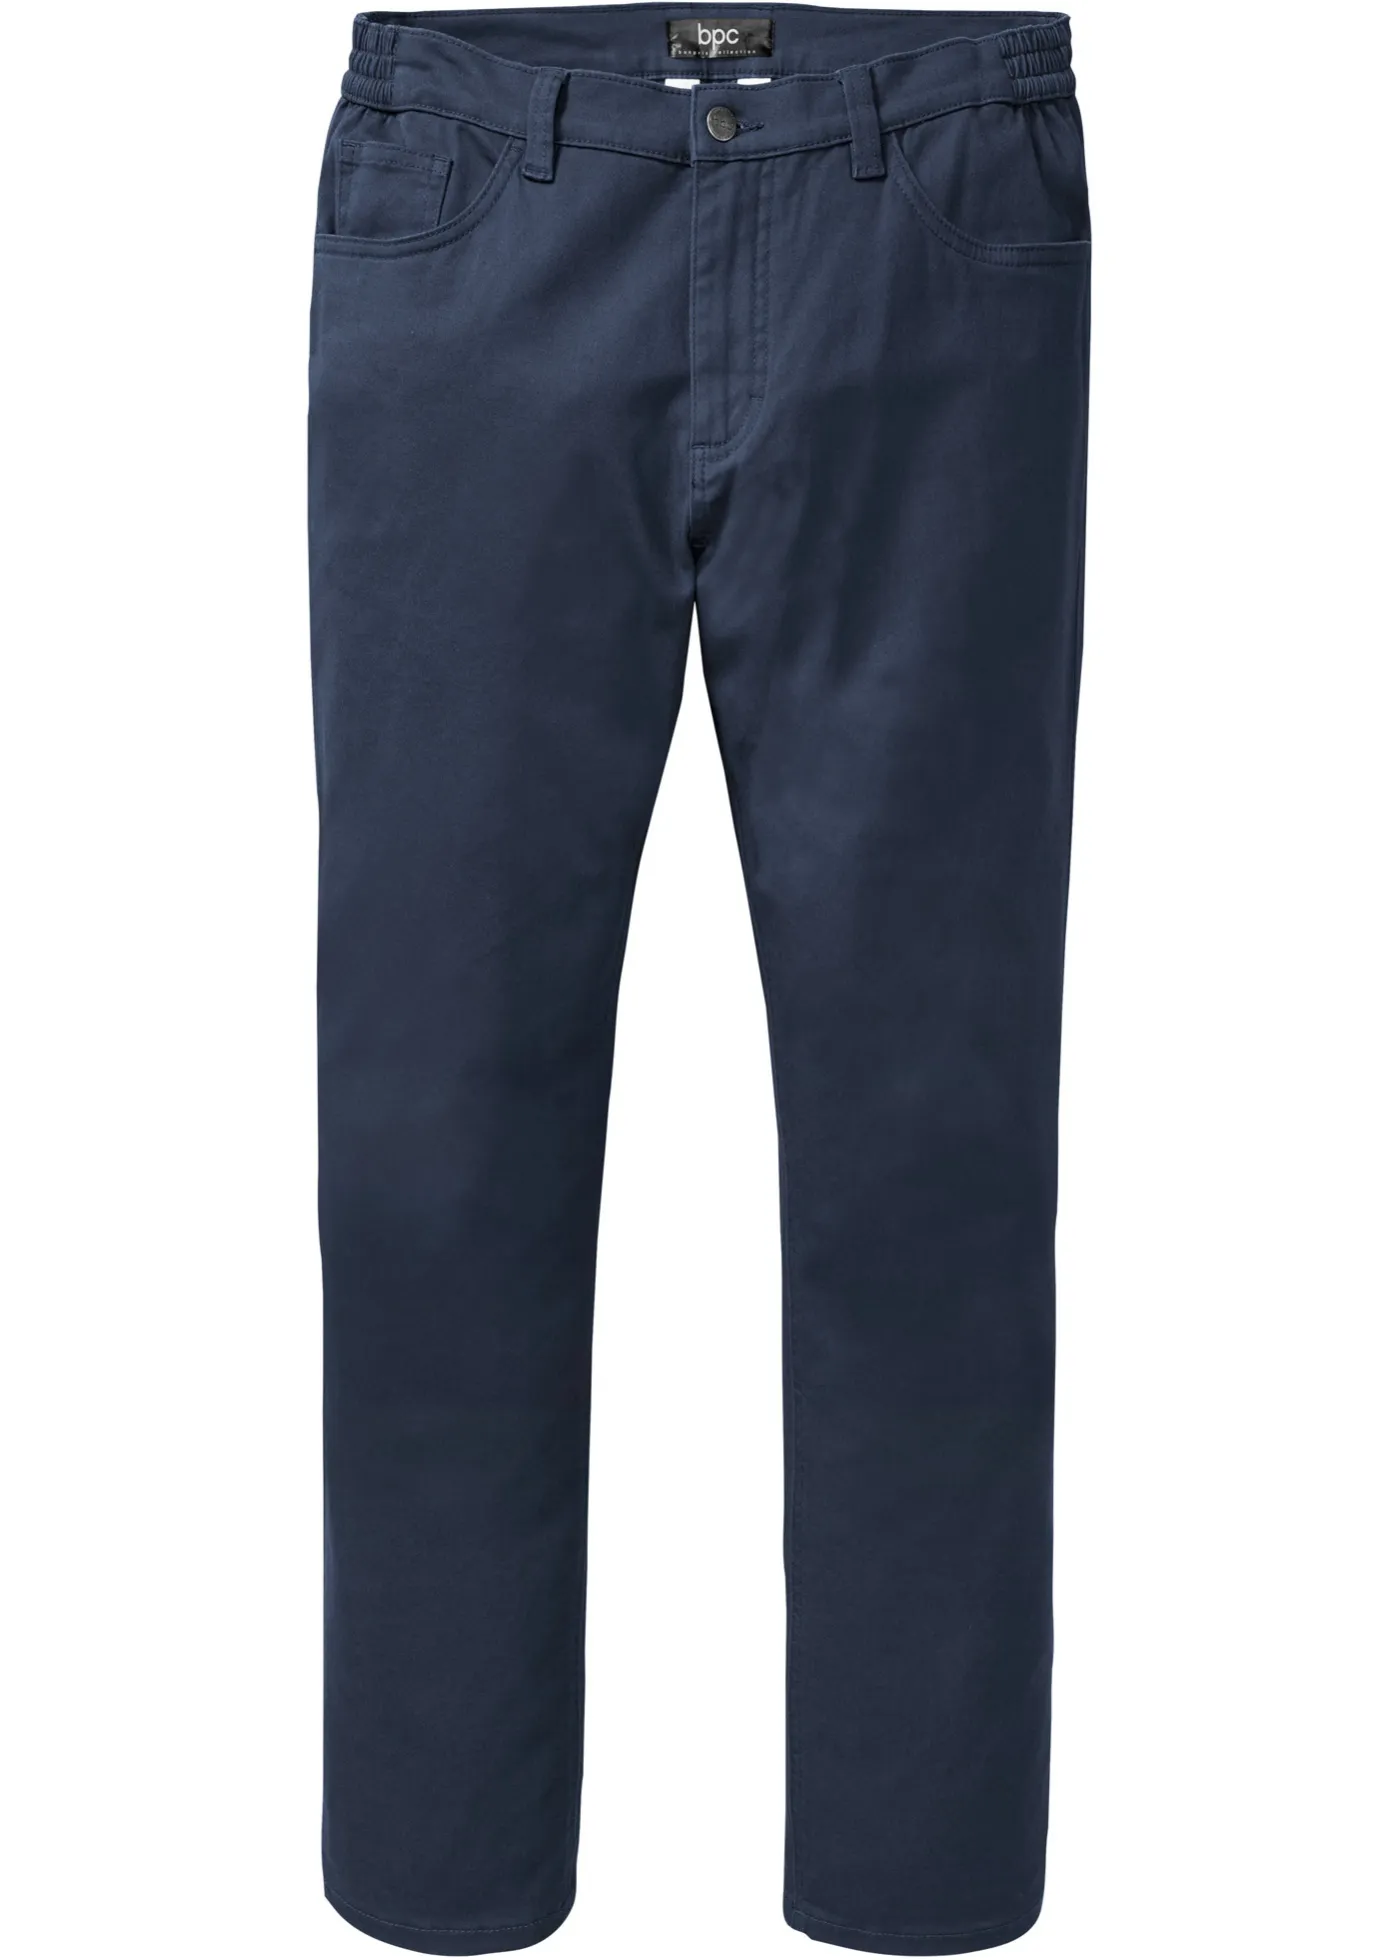 Pantaloni elasticizzati con taglio comfort slim fit straight (Blu) - bpc bonprix collection